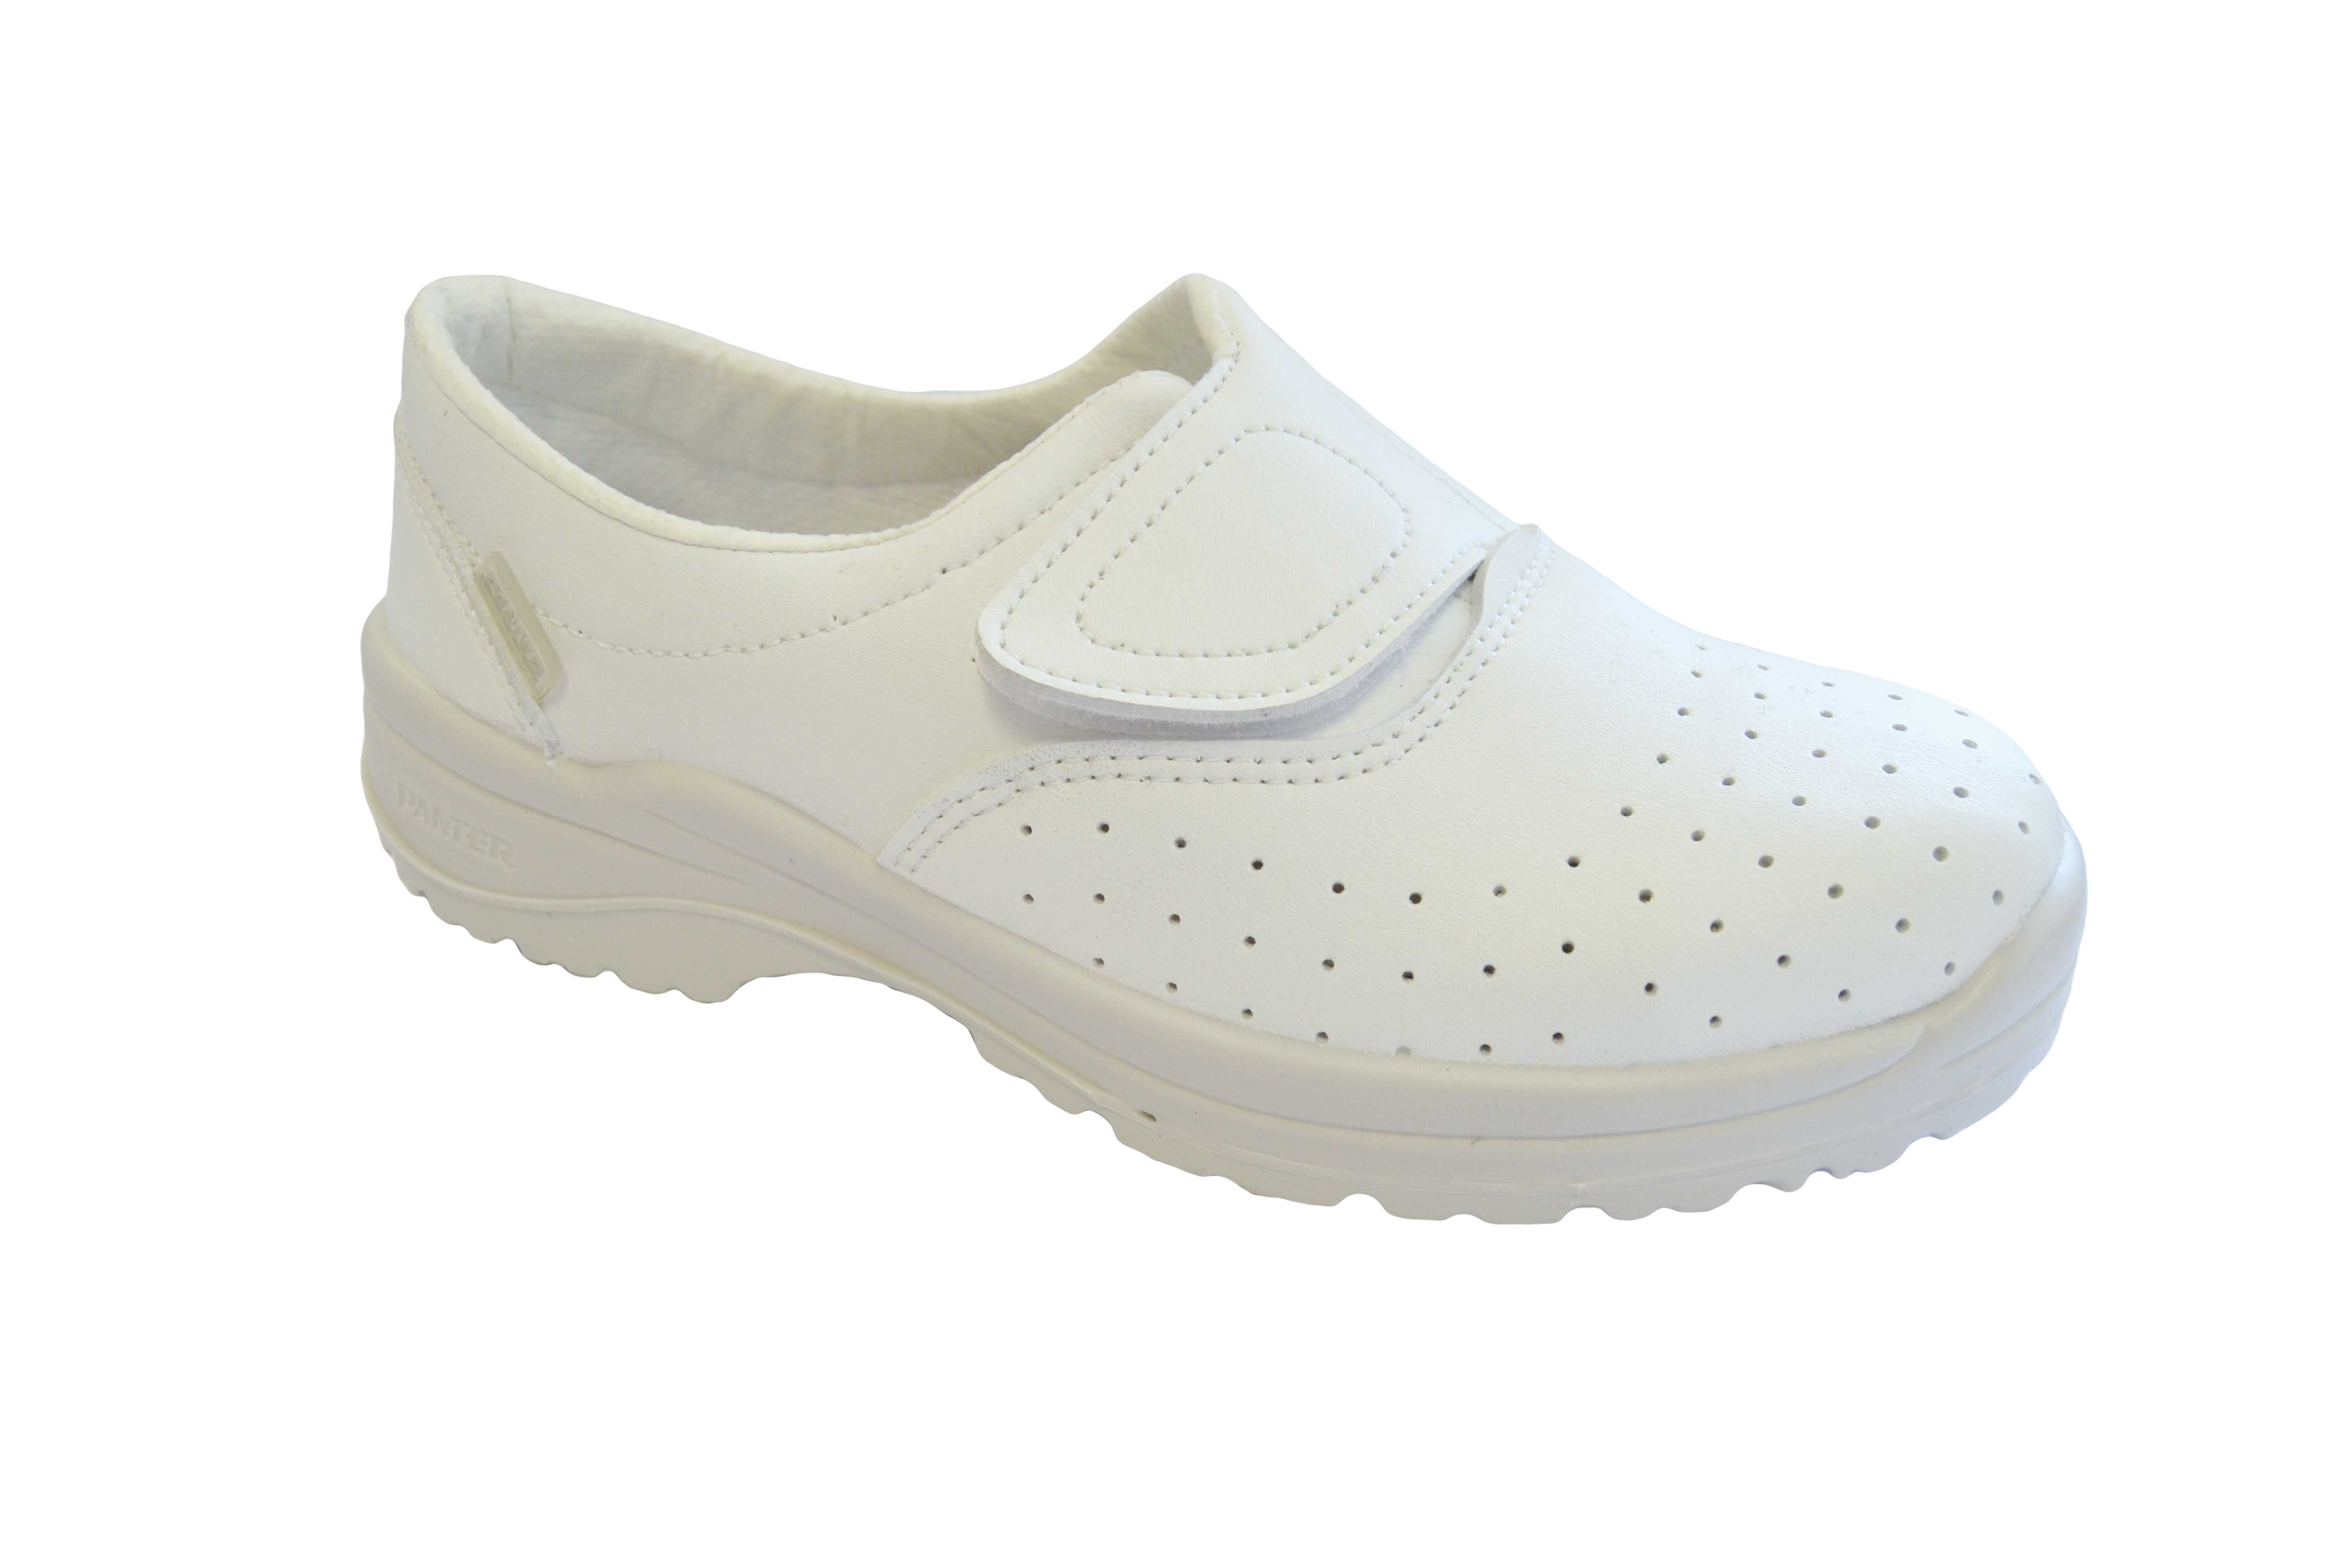 Zapatos blancos Brisa 01 Hidrogrip. PANTER. Número: 37